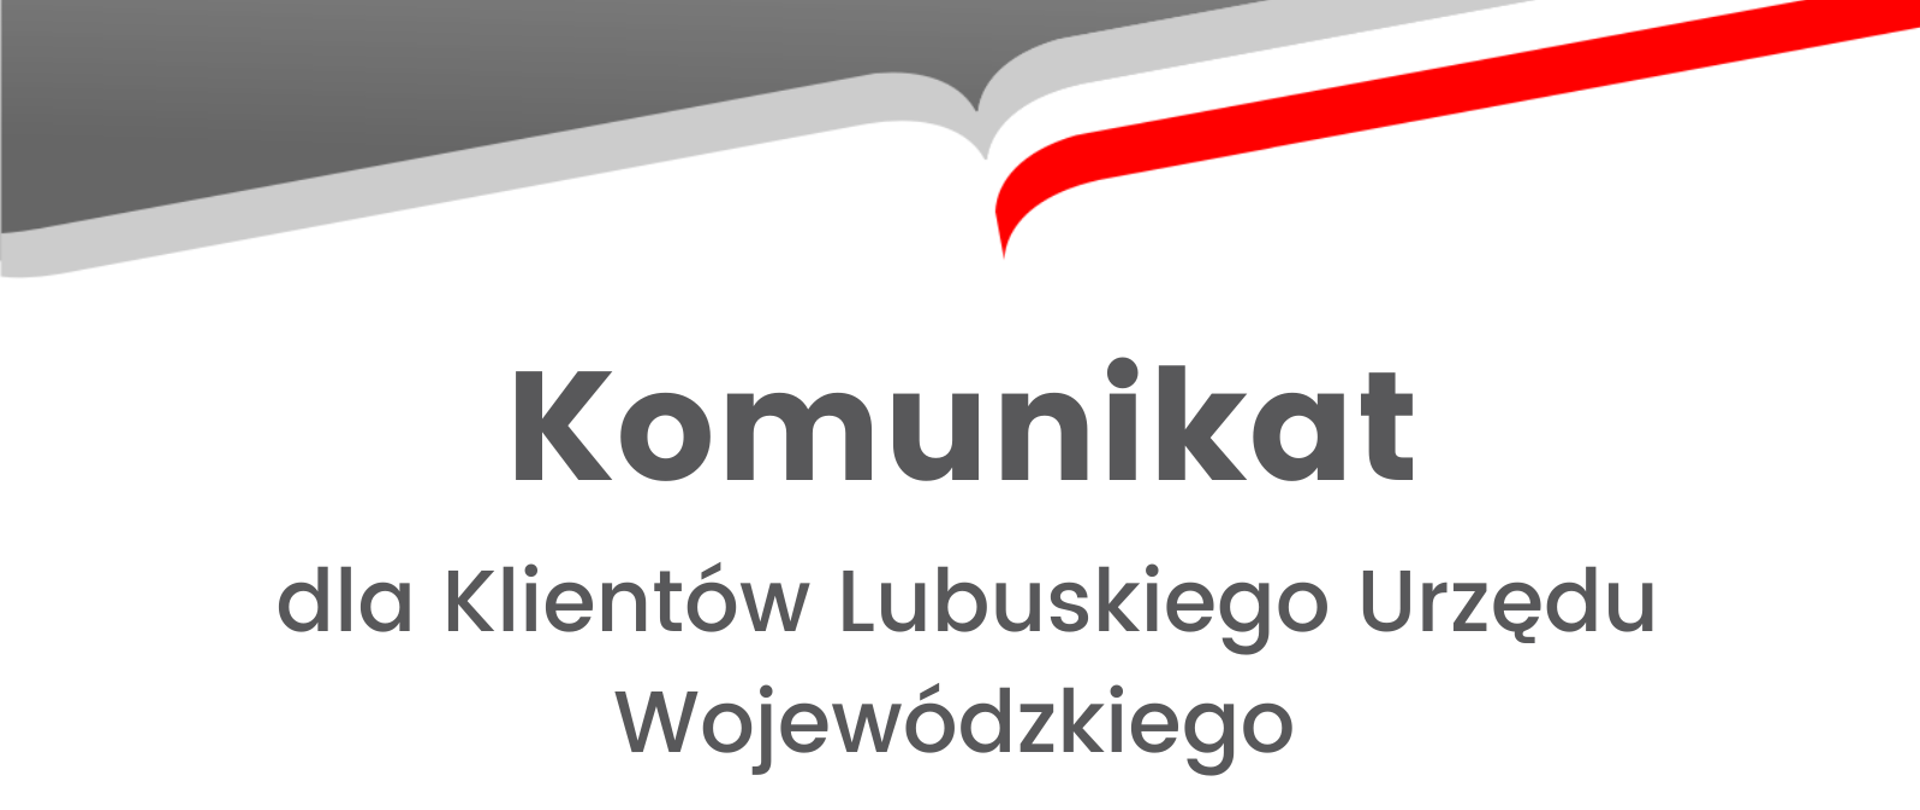 Komunikat dla Klientów Lubuskiego Urzędu Wojewódzkiego 